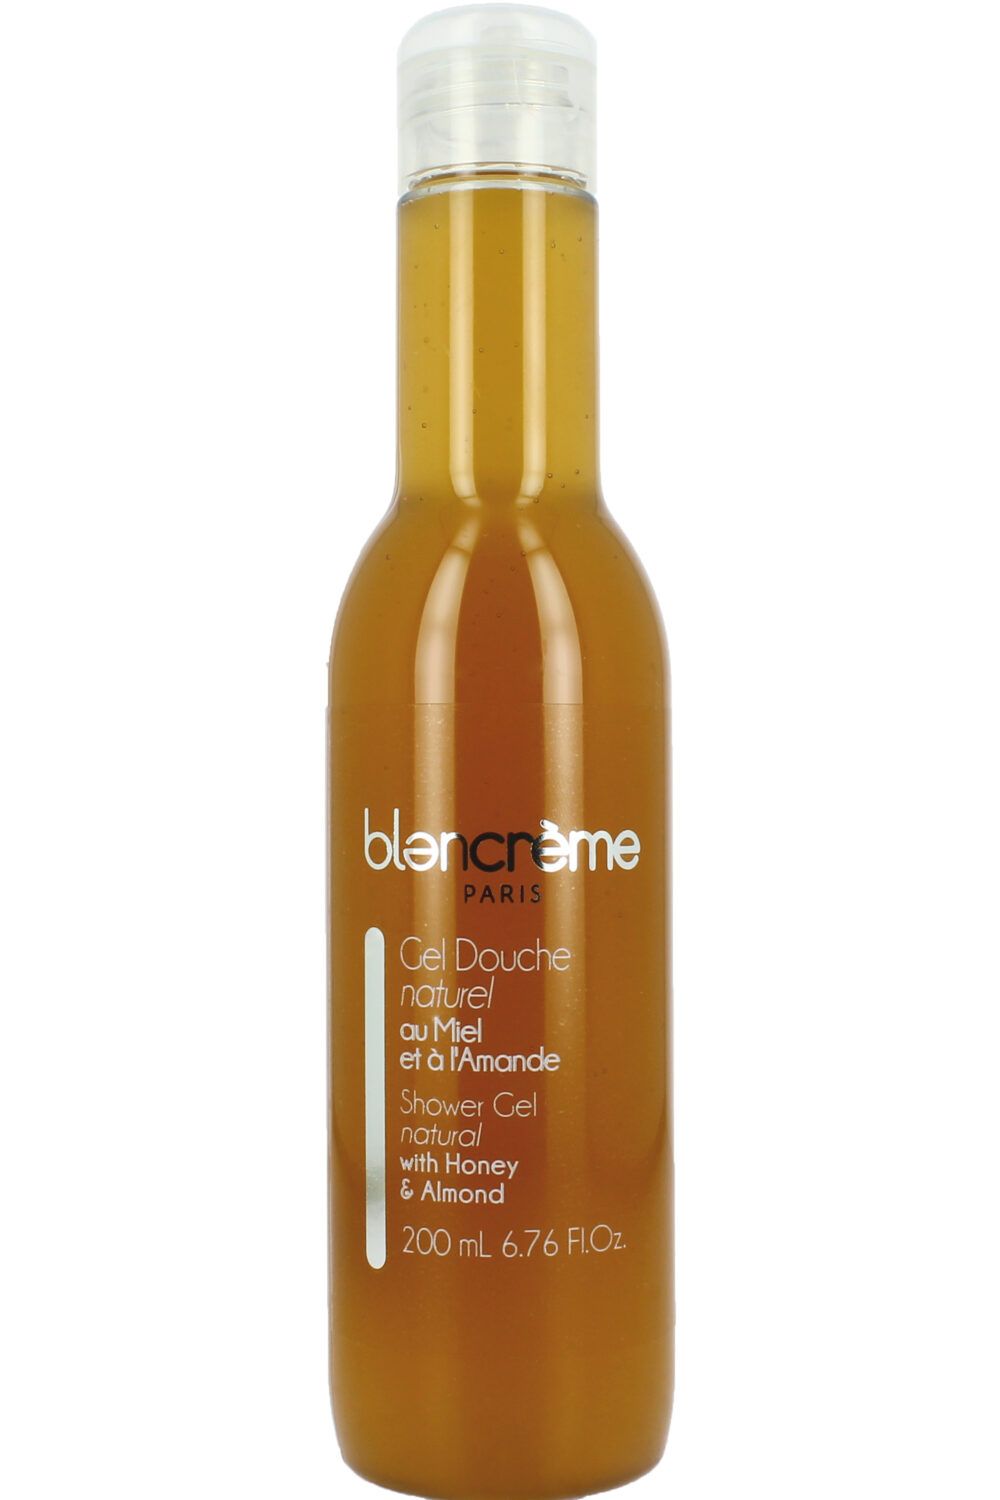 Blancrème - Gel douche naturel miel & amande